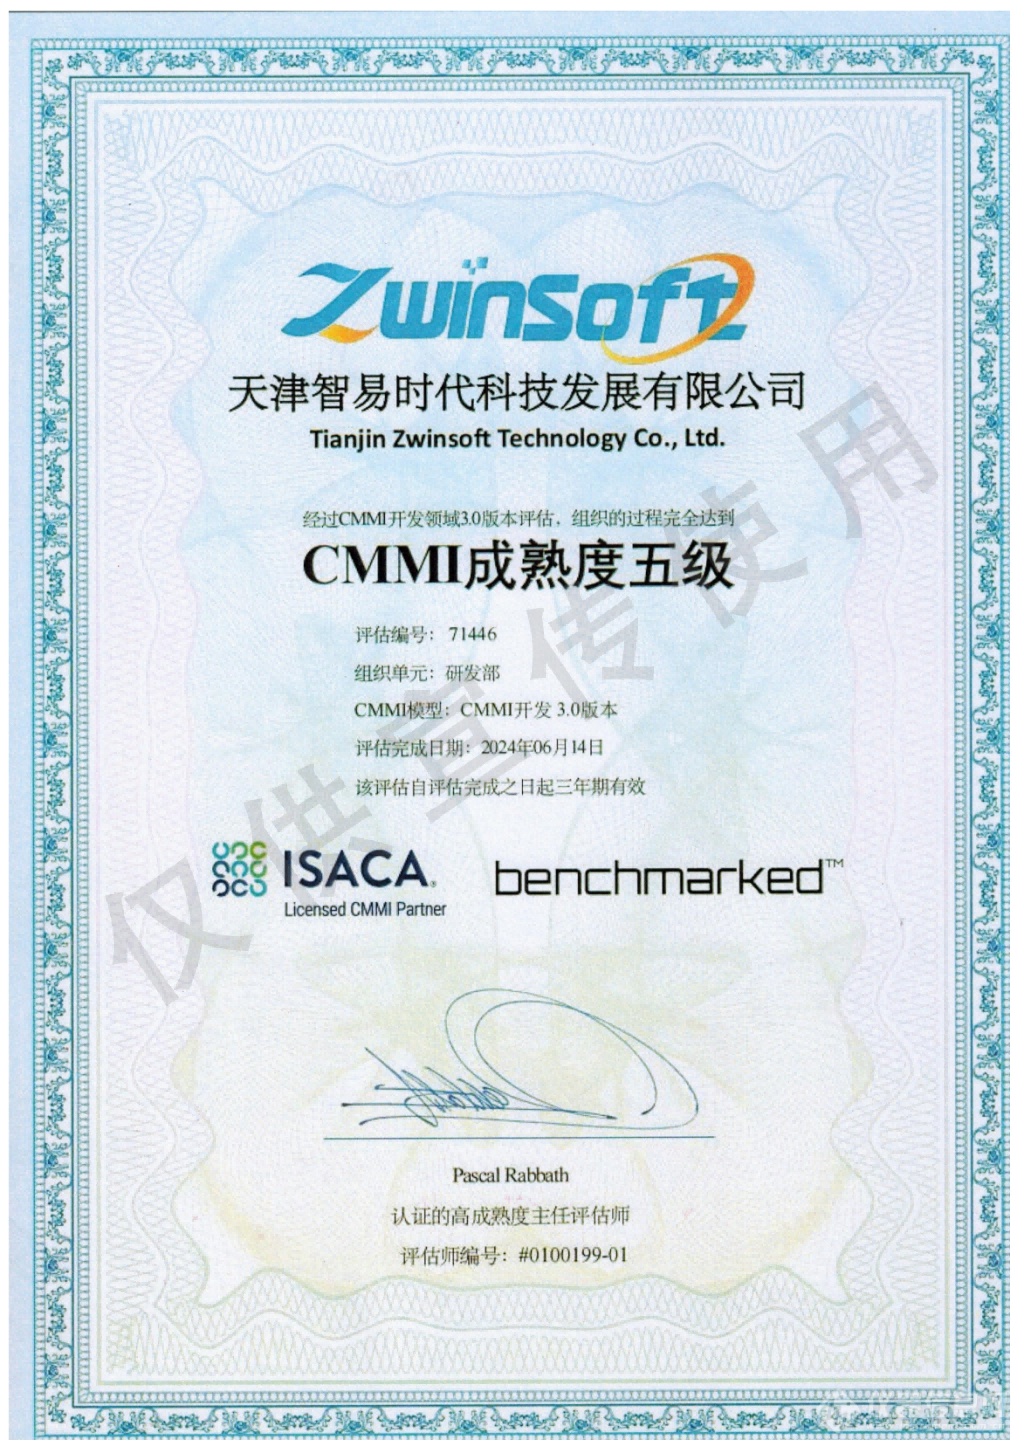 【企业资讯】智易时代荣获CMMI成熟度5级认证证书！